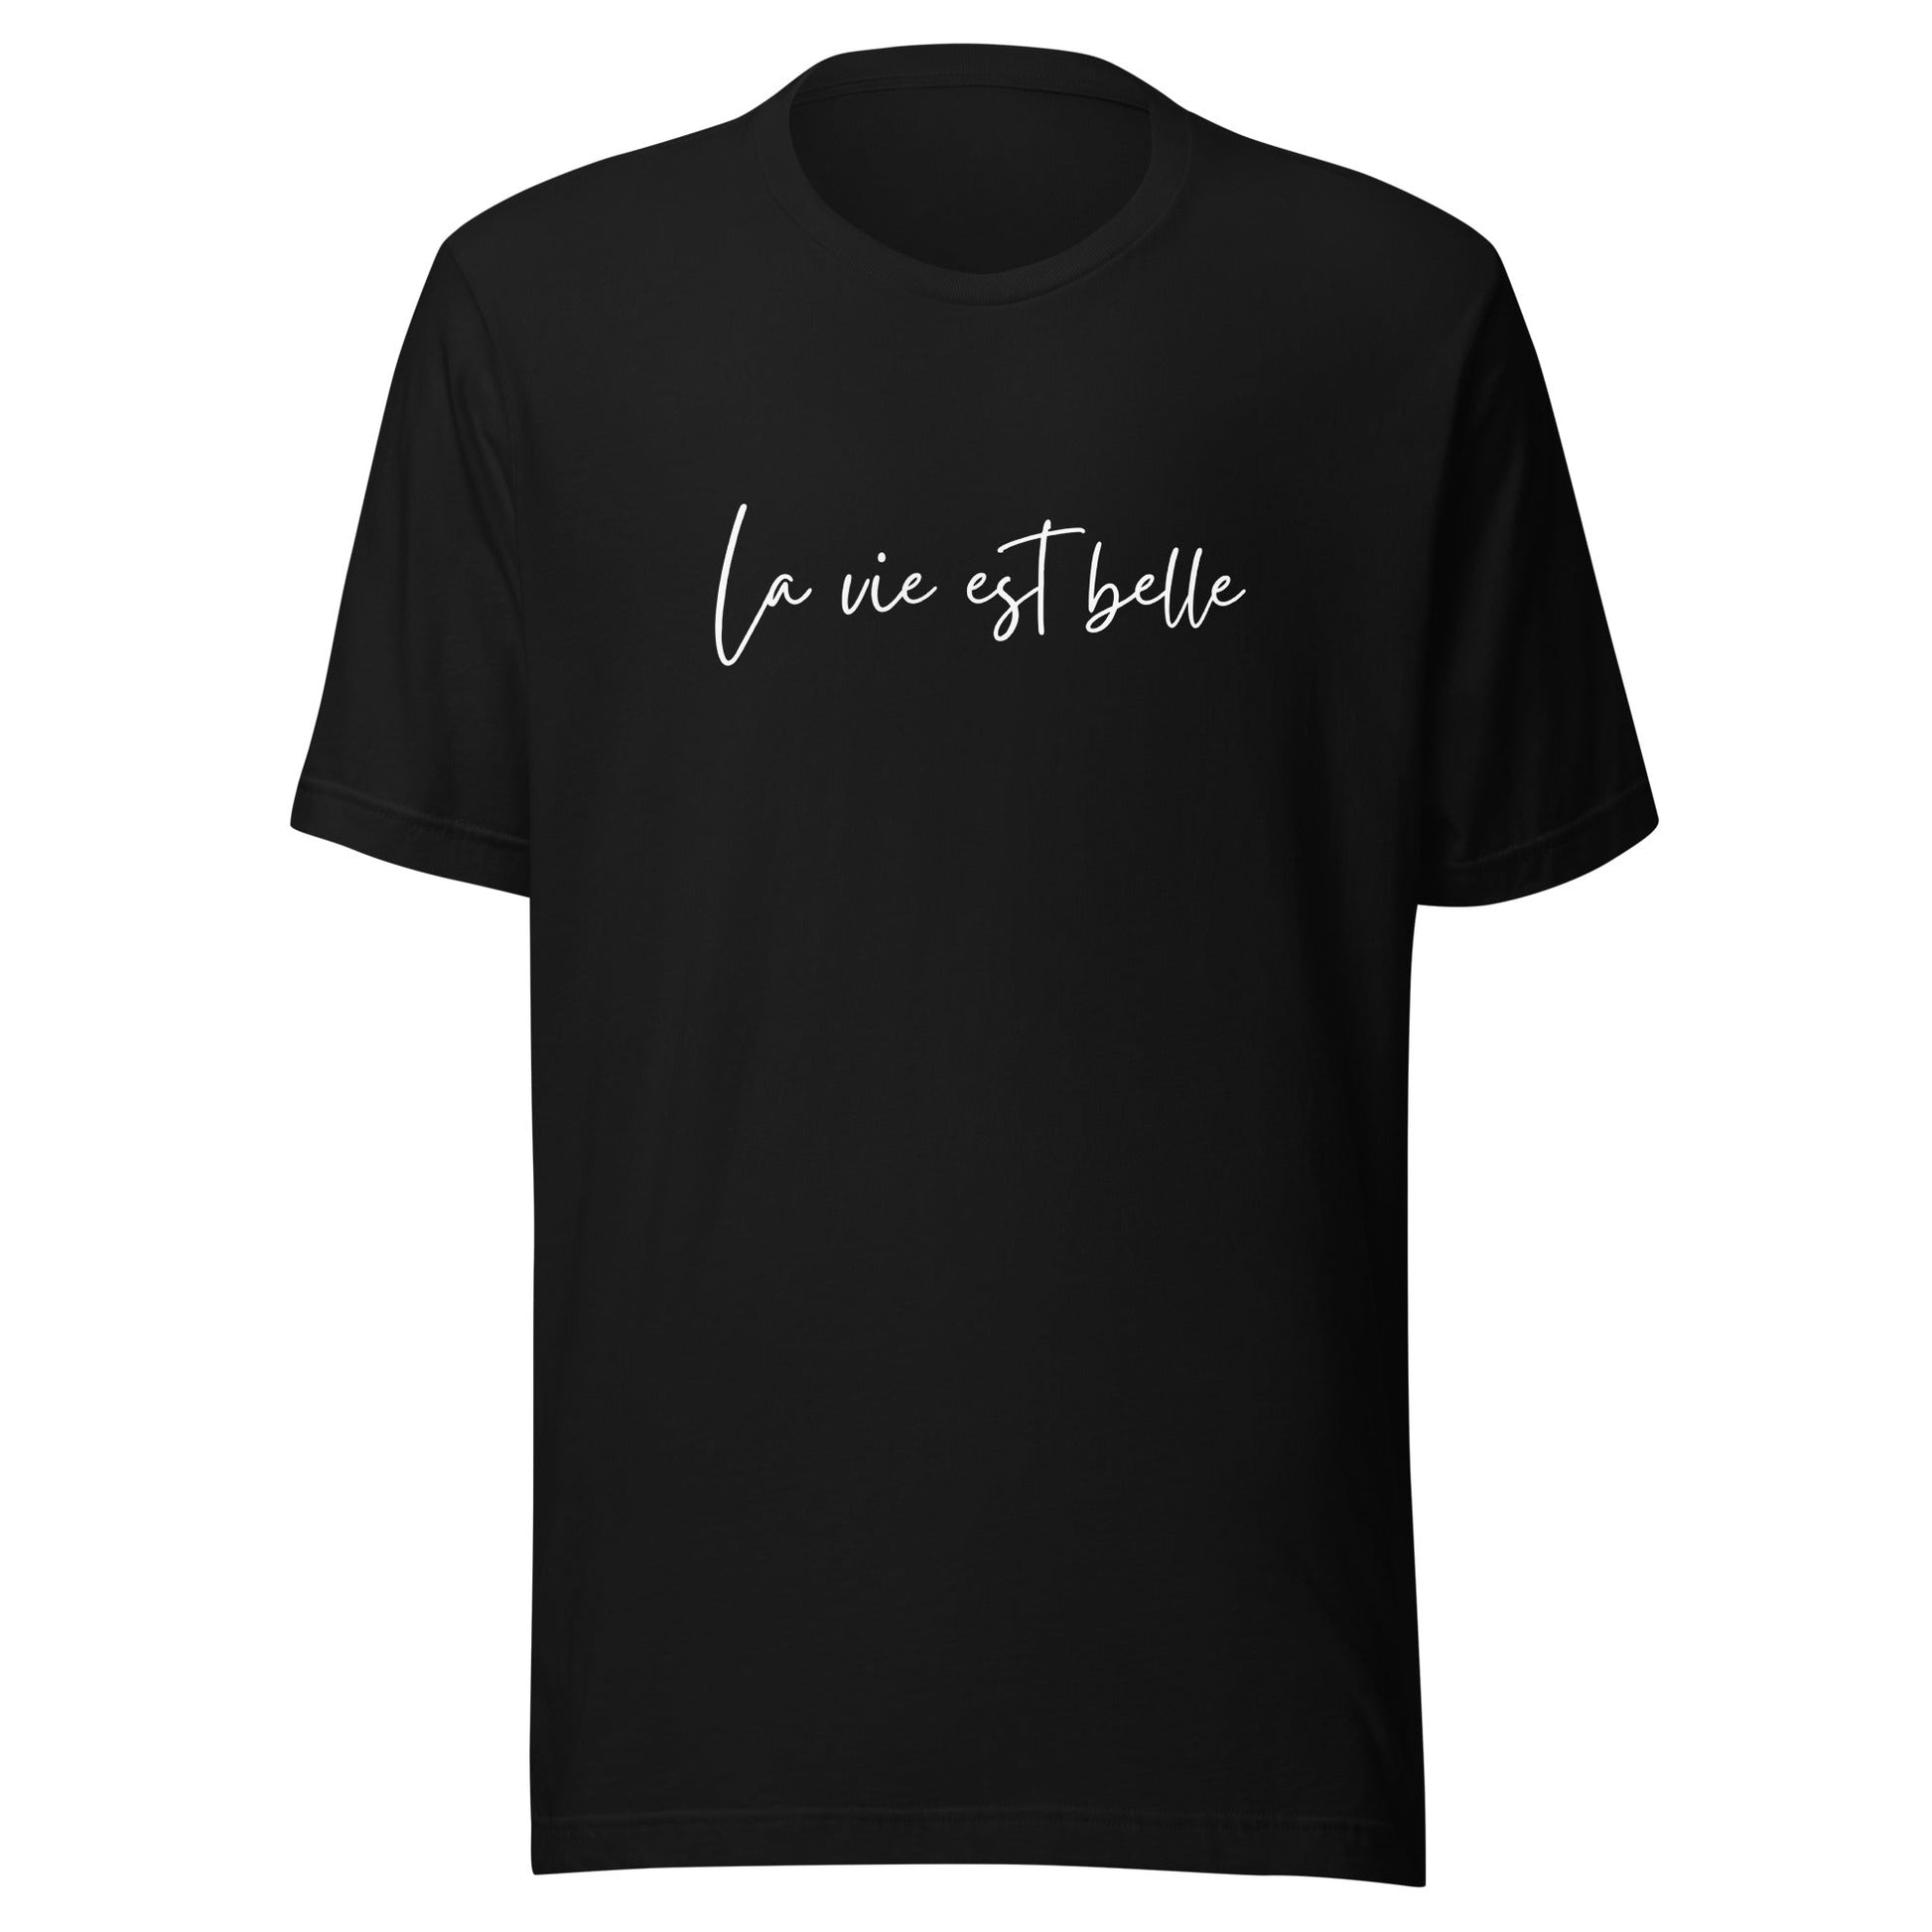 La vie est belle - Unisex t-shirt - lilaloop - T-shirt